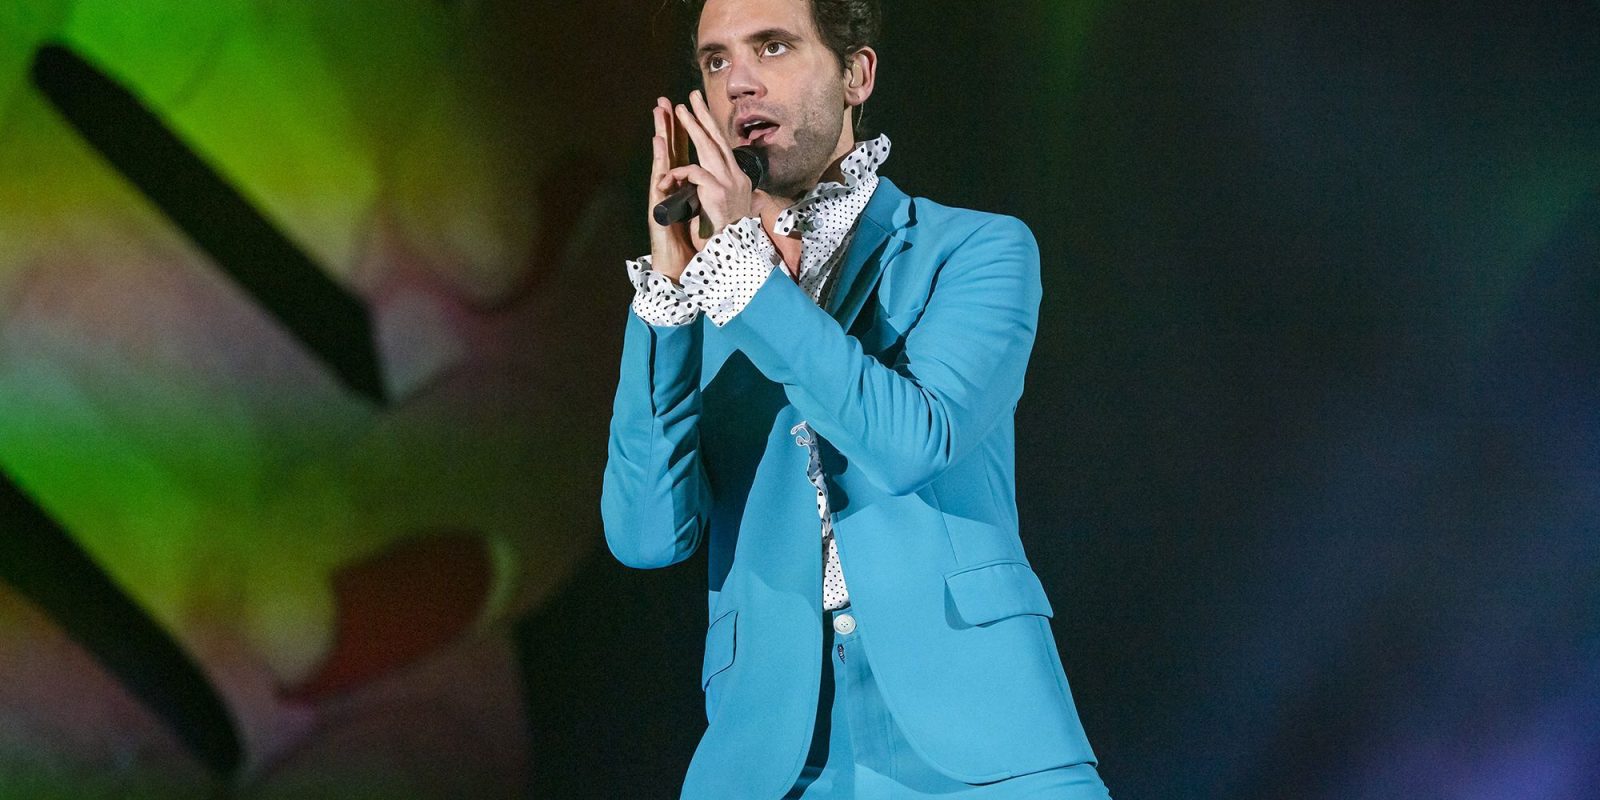 Mika en concert à Padoue en Italie le 1er février 2020.